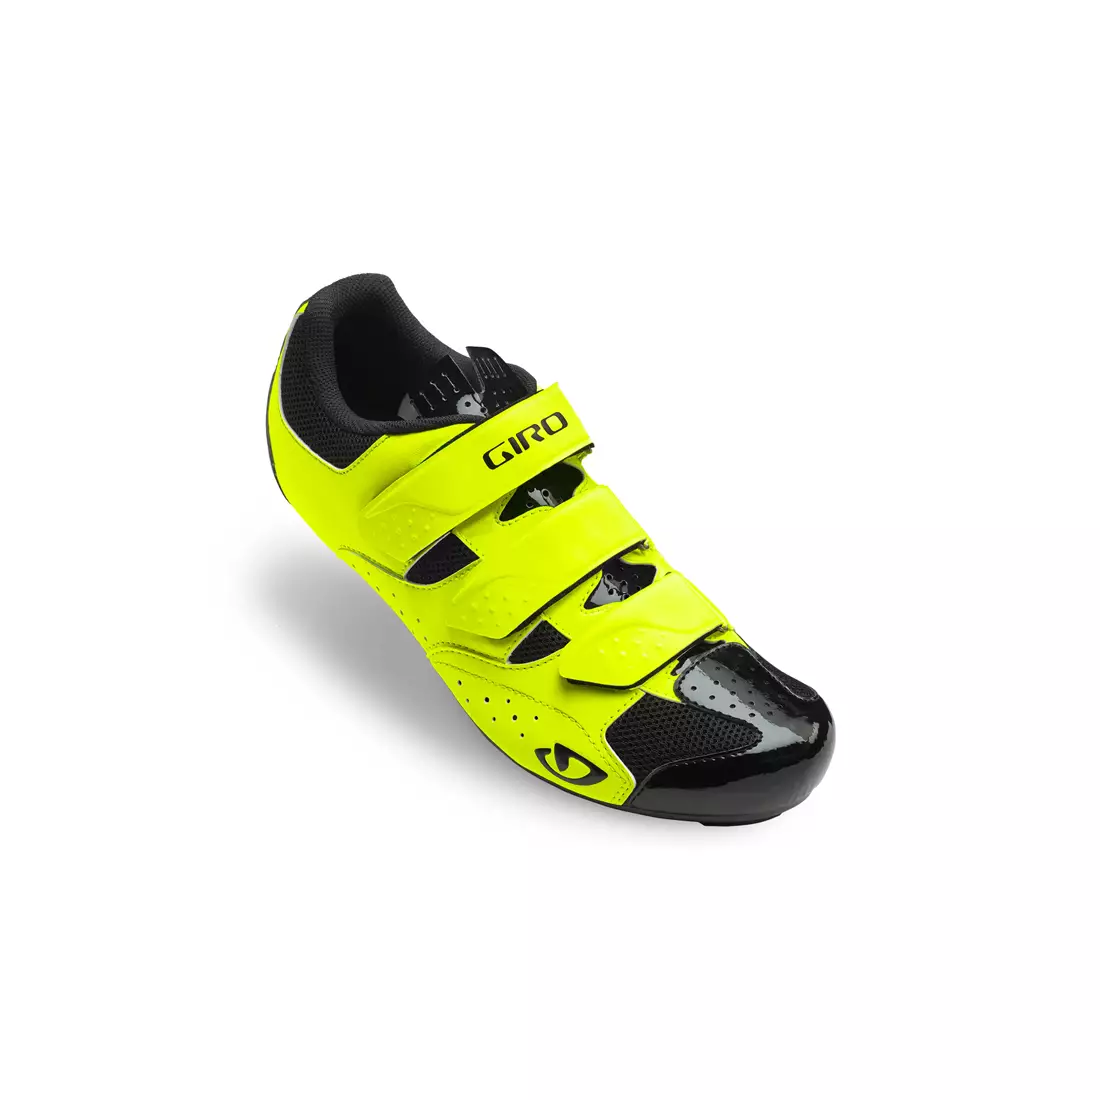 GIRO TECHNE - pánska fluoro cyklistická obuv